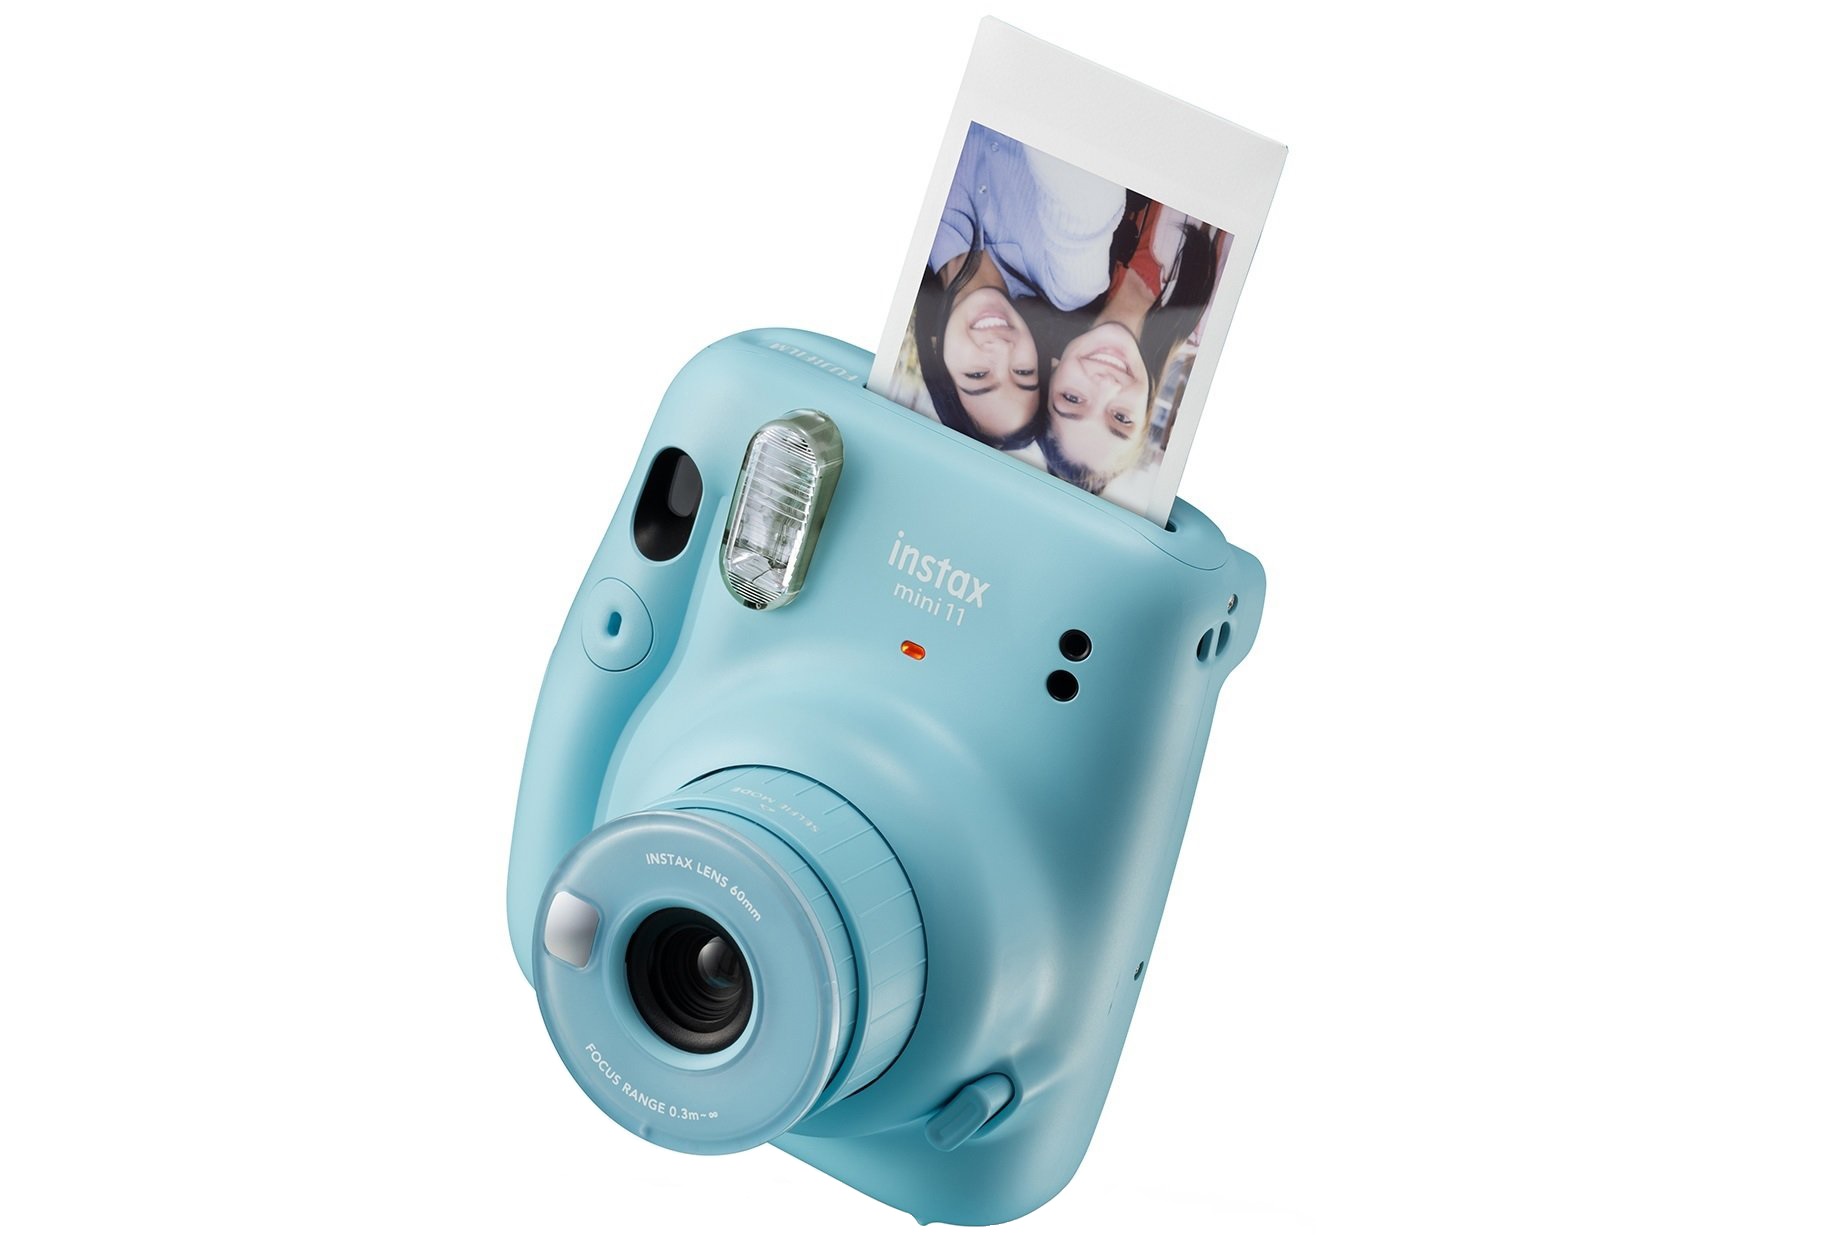 Розумна фотокамера FUJIFILM Instax mini 11 для незабутніх селфі